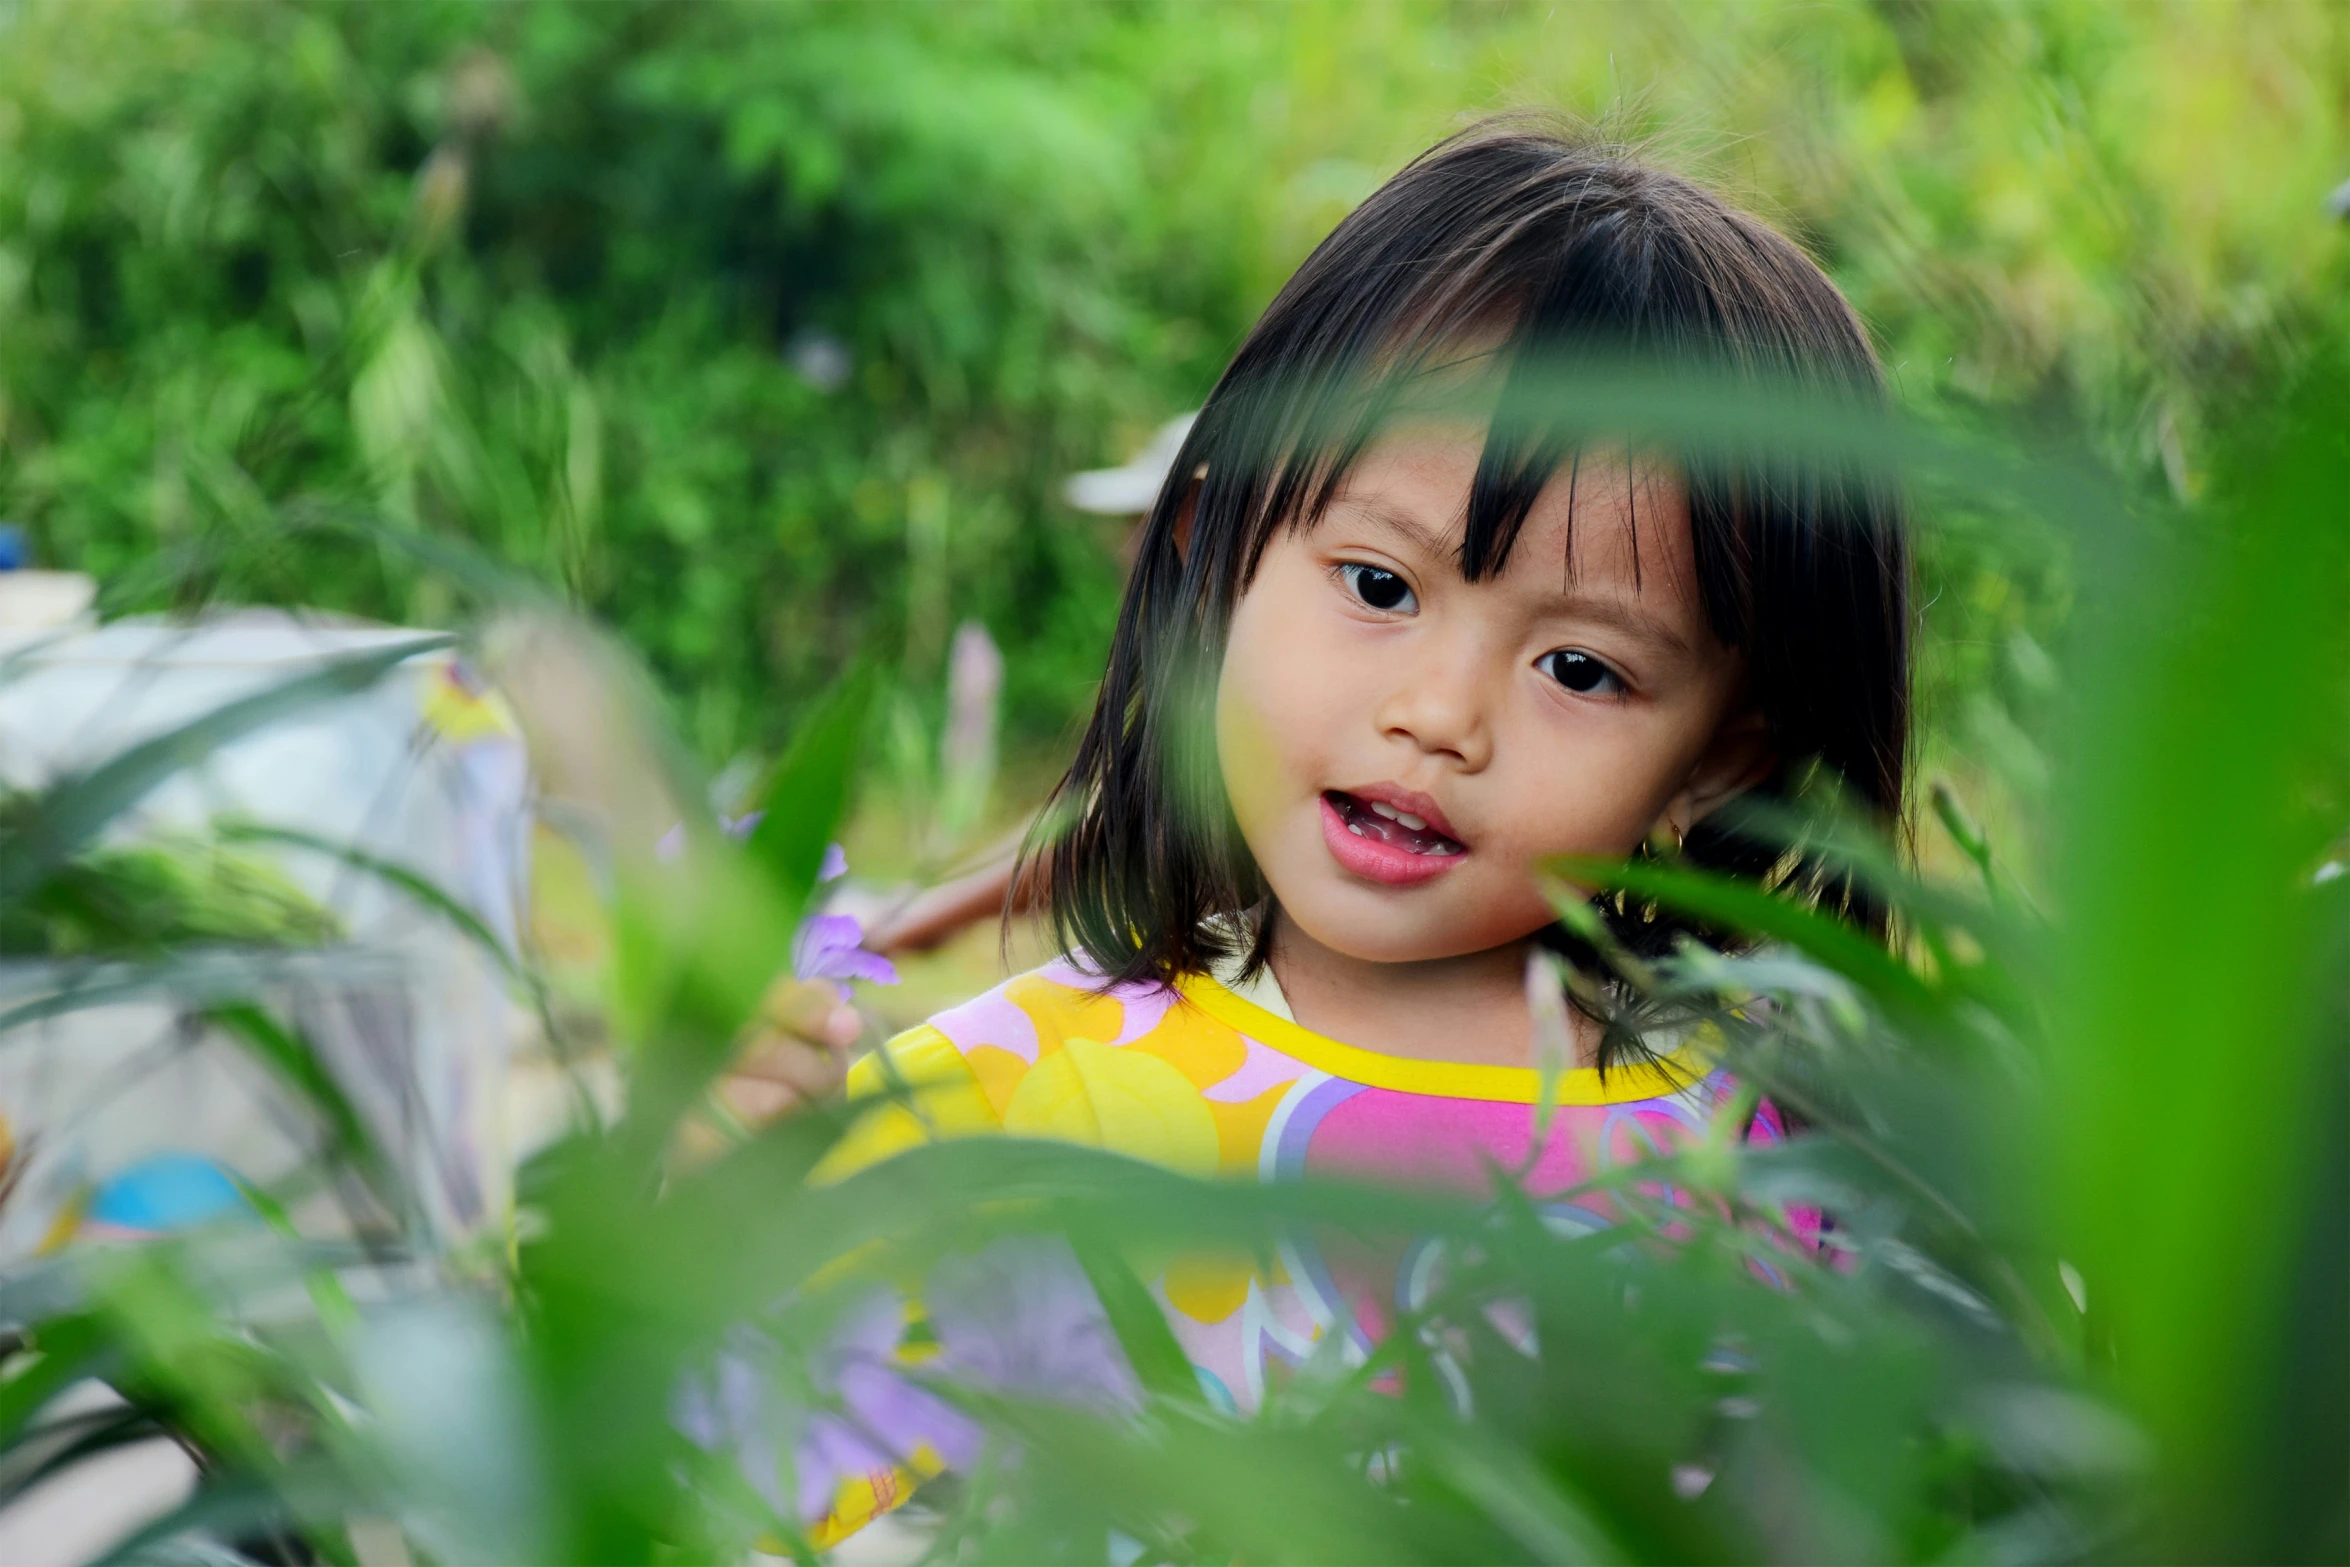 a child in a garden of tall grass